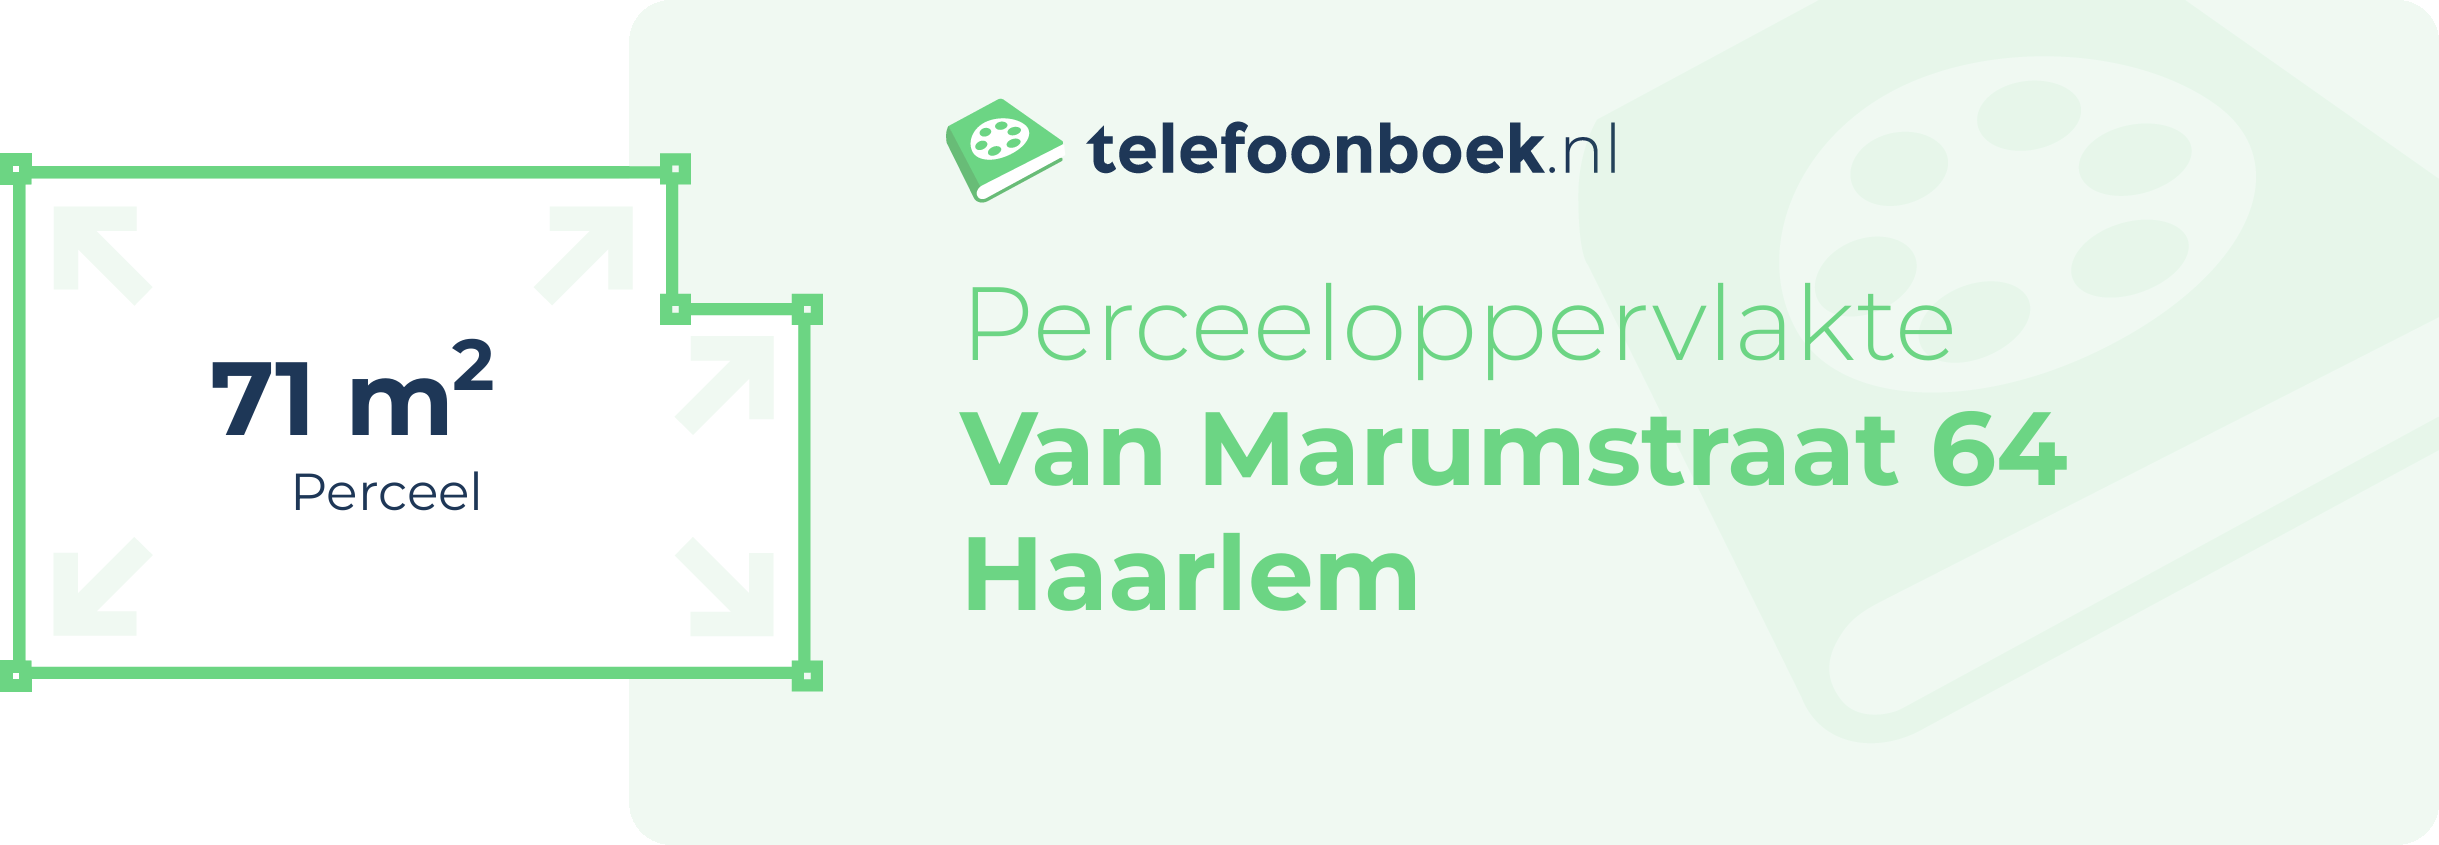 Perceeloppervlakte Van Marumstraat 64 Haarlem